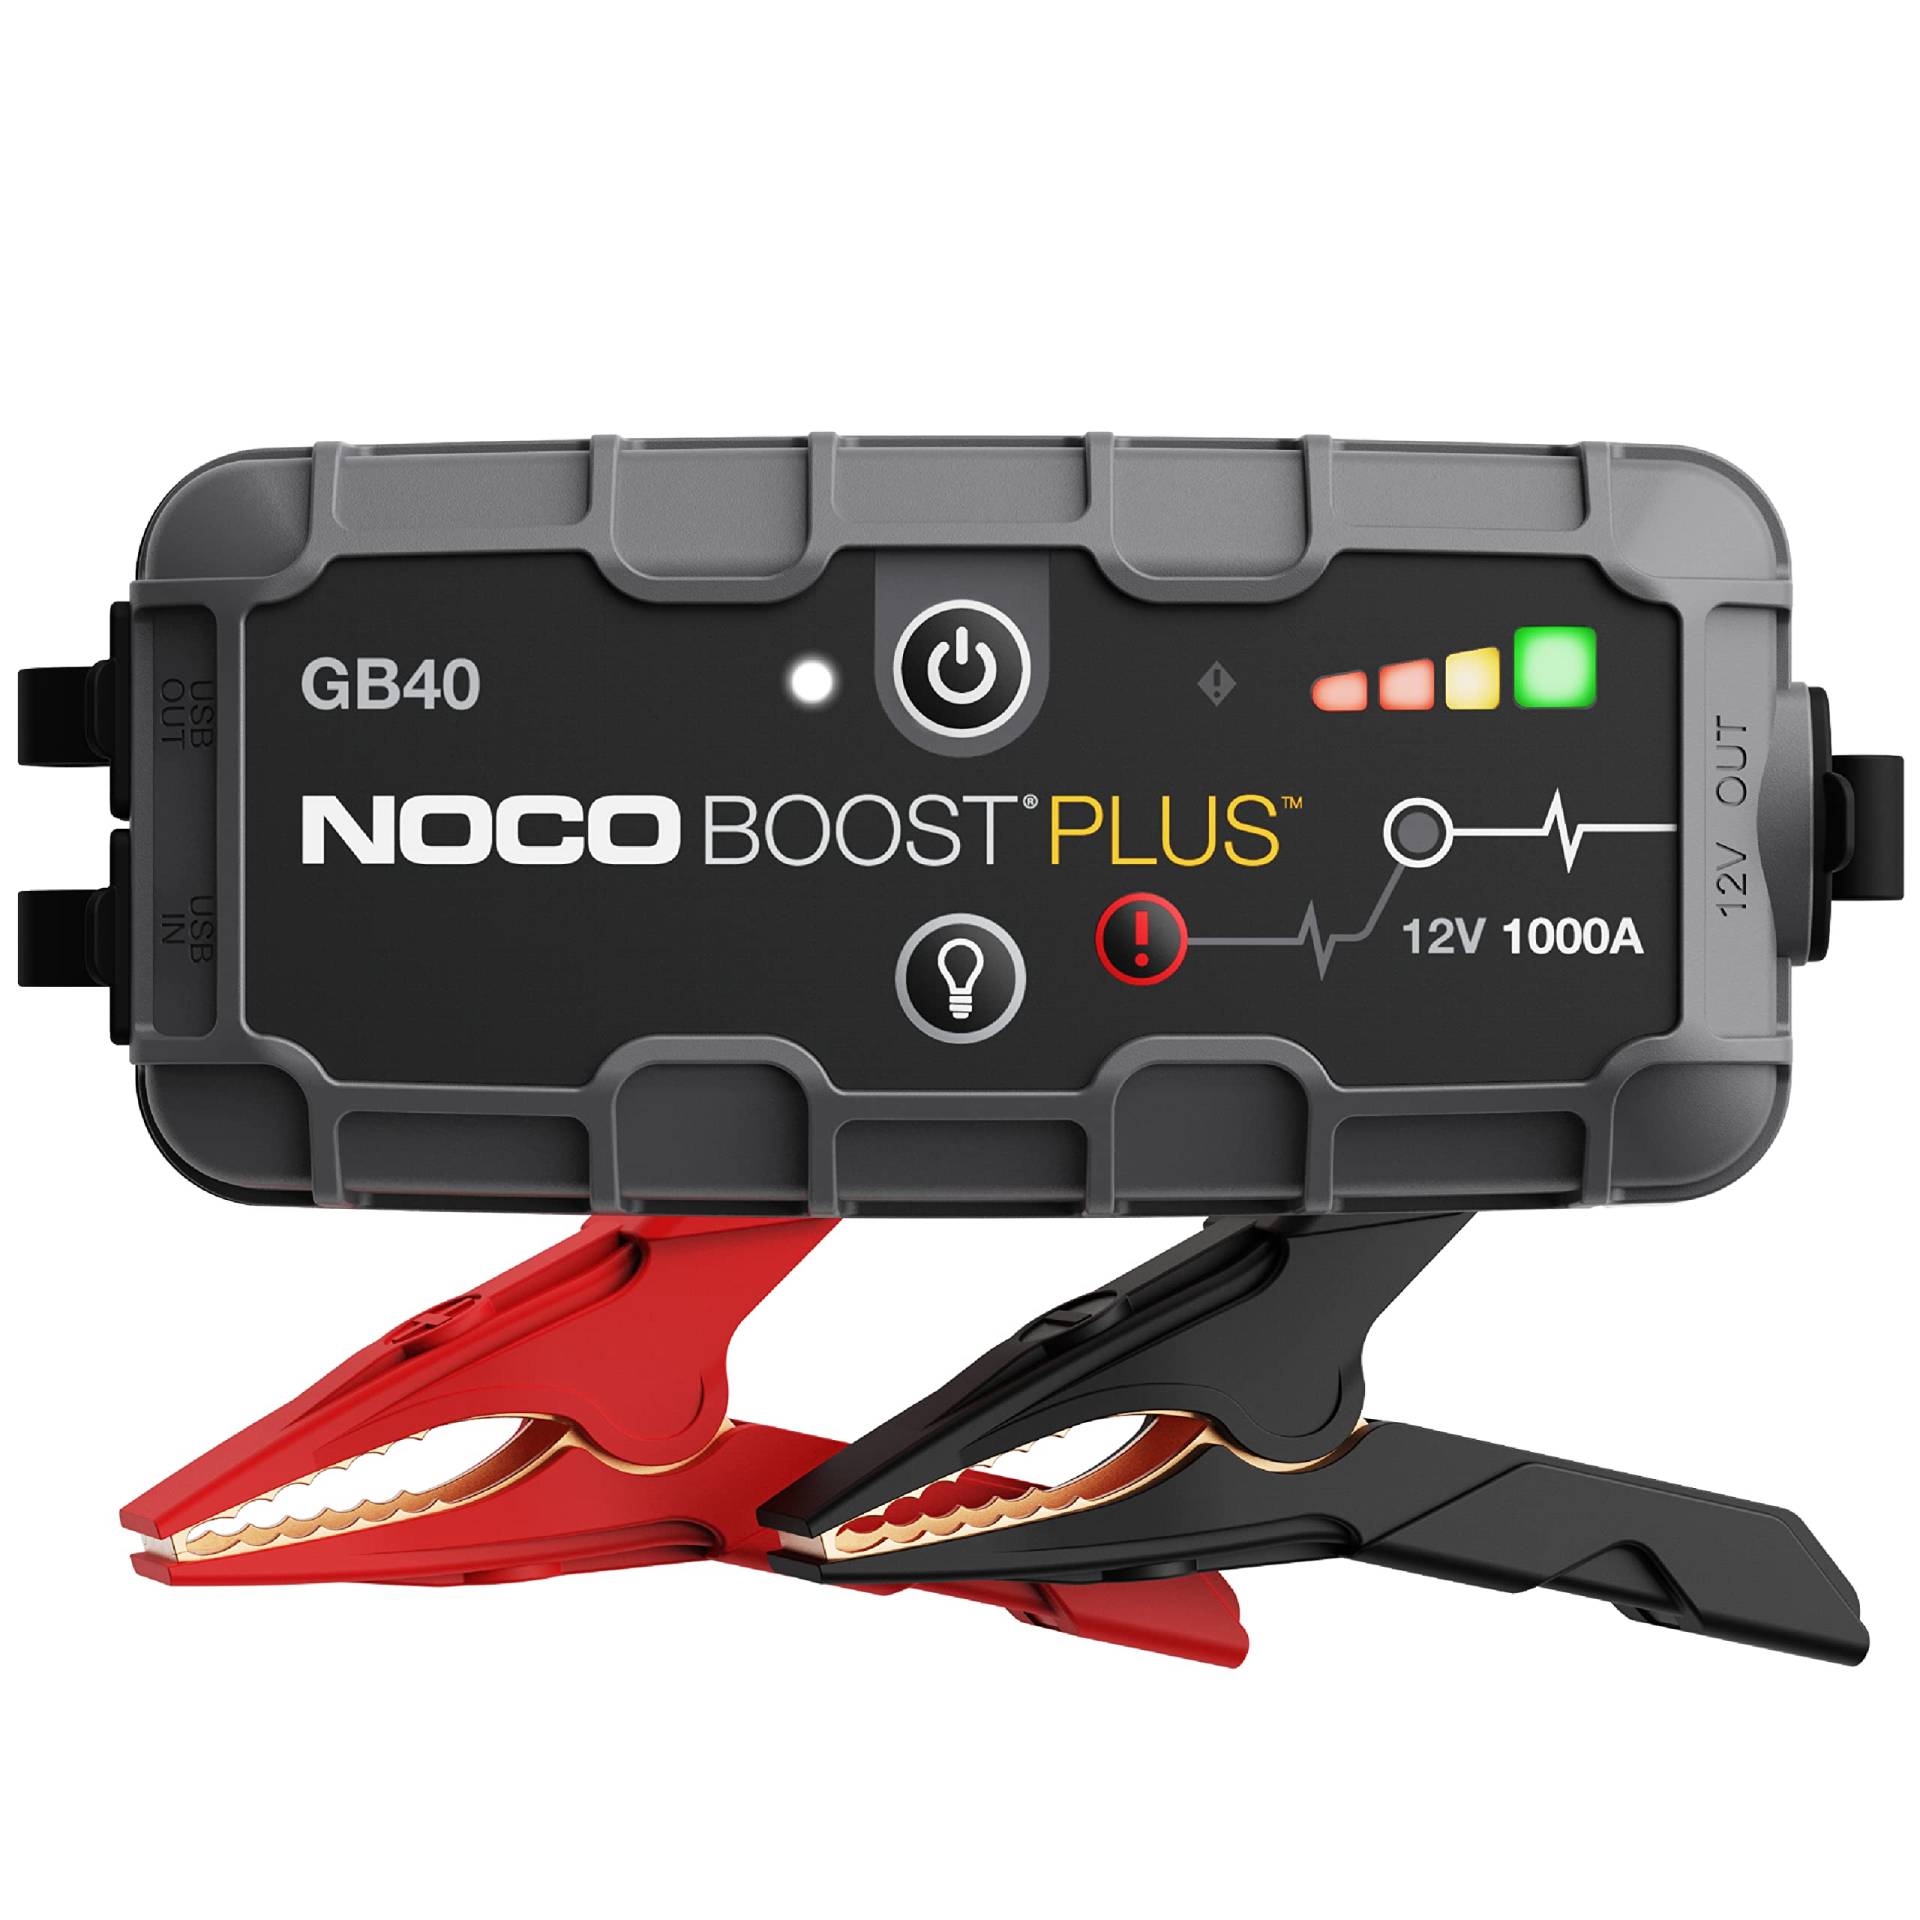 NOCO Boost Plus GB40 1000A 12V UltraSafe Starthilfe Powerbank, Tragbare Auto Batterie Booster, Starthilfekabel und Überbrückungskabel für bis zu 6-Liter-Benzin- und 3-Liter-Dieselmotoren von NOCO